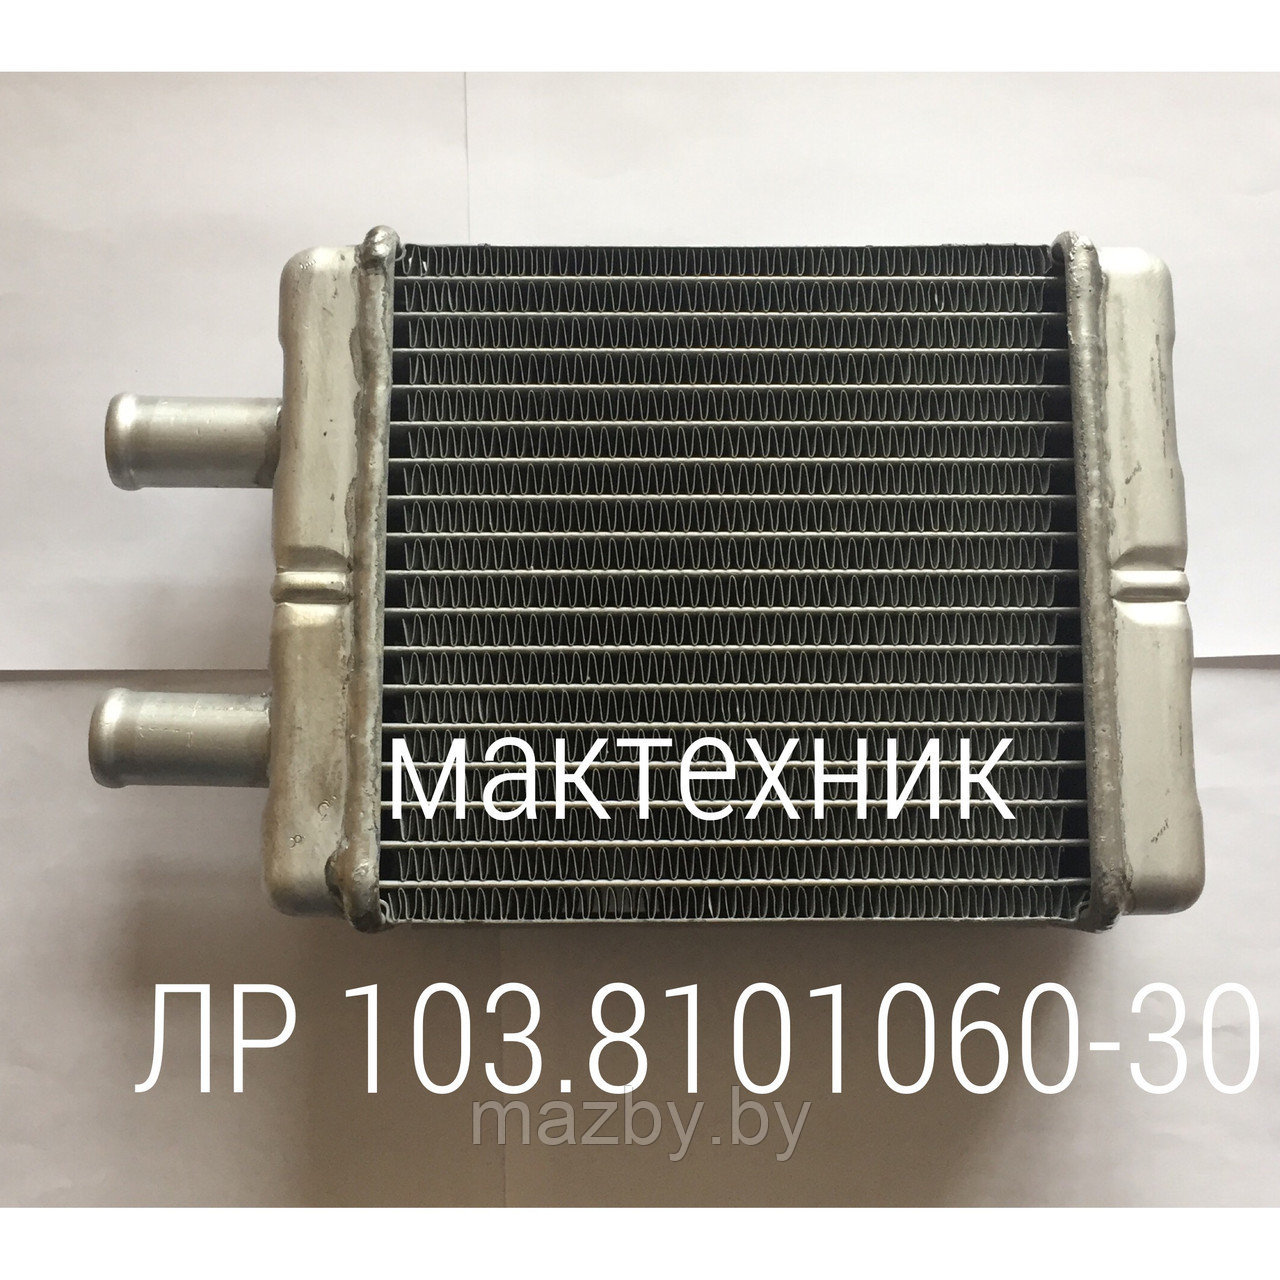 103-8101060-30 радиатор отопителя автобус МАЗ  ( 103-8101060-30 )